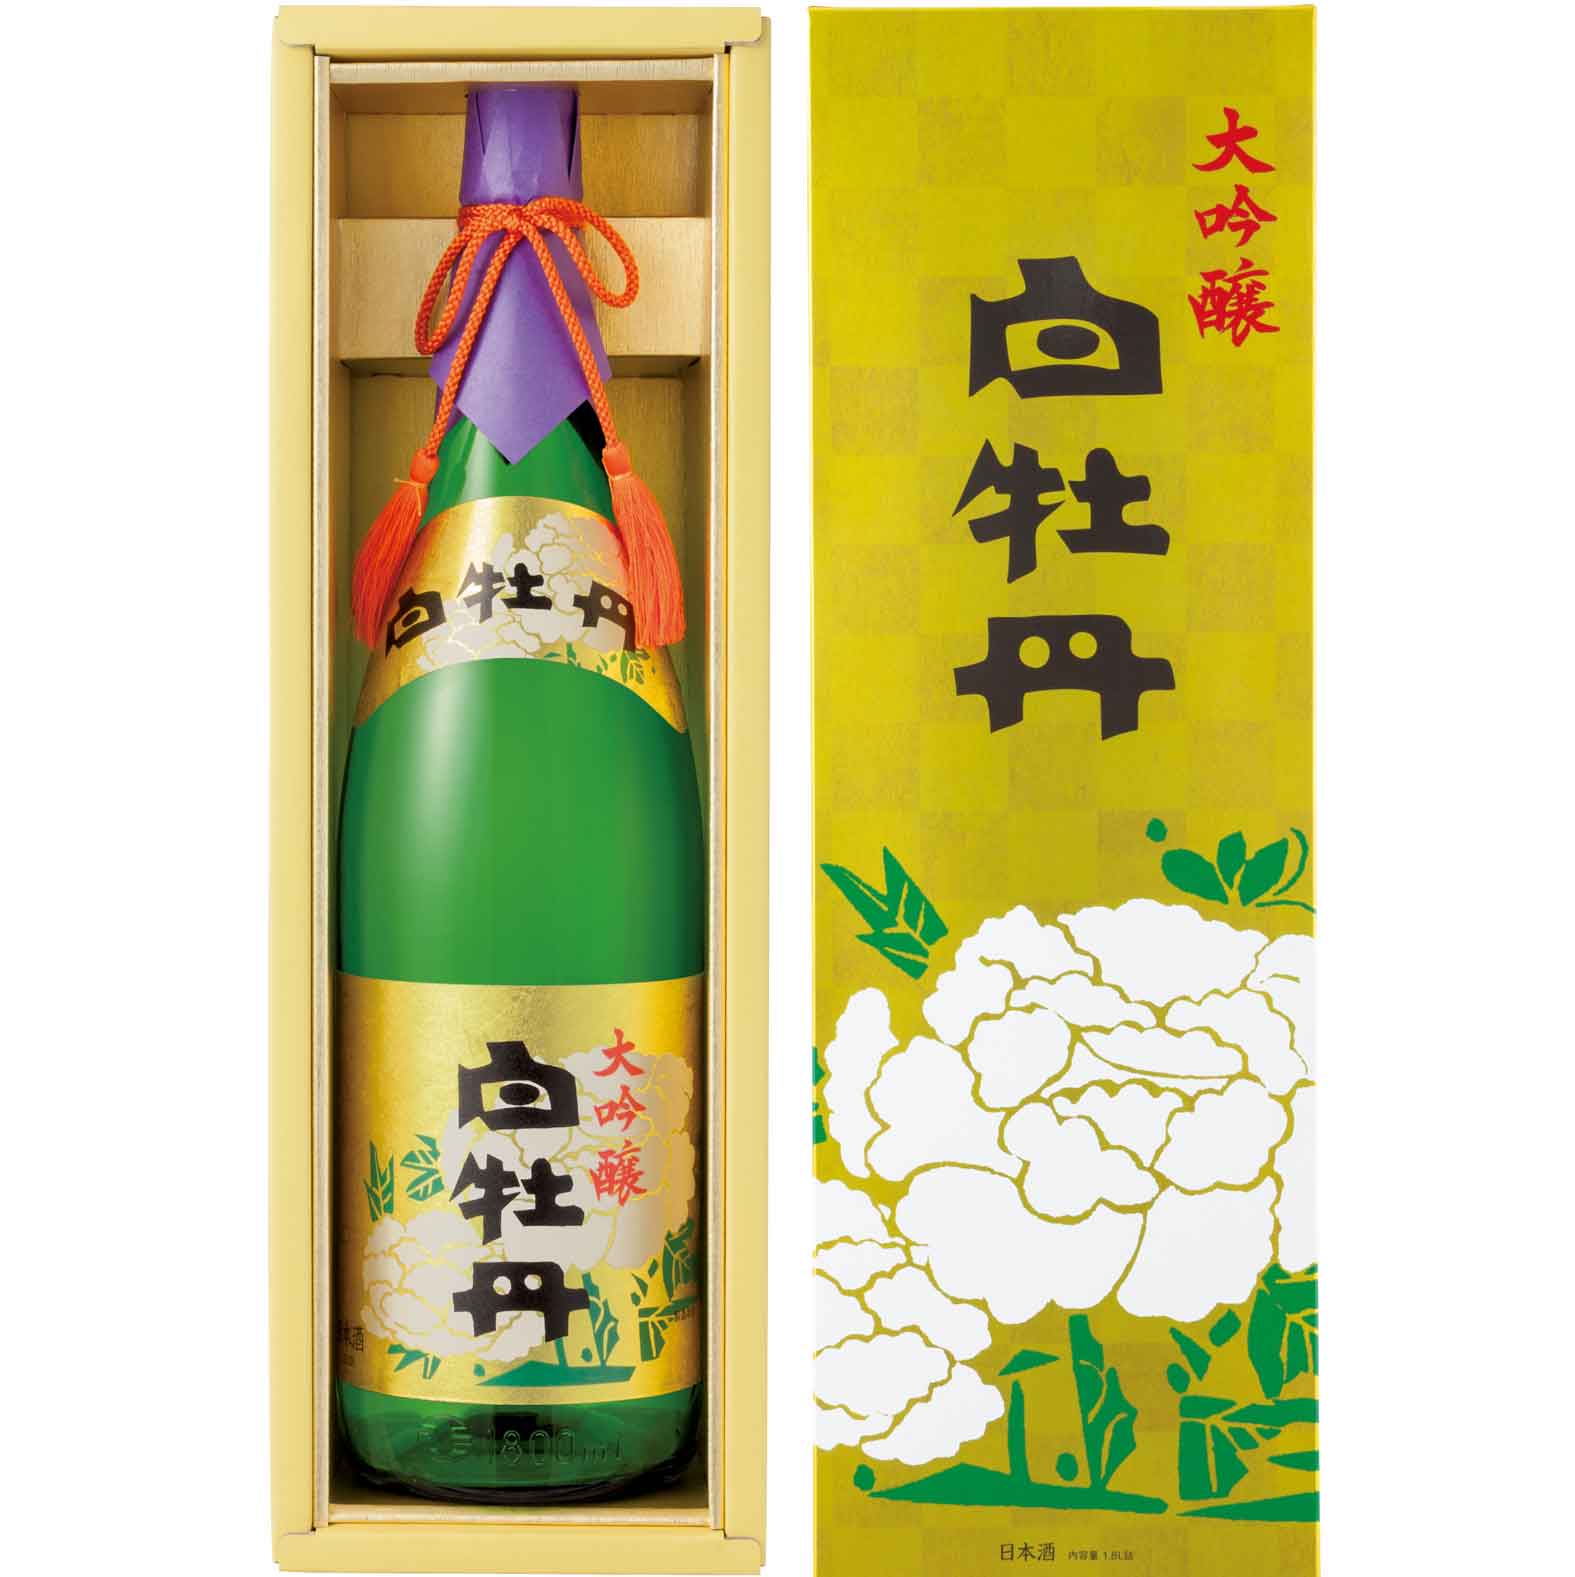 【日本酒 白牡丹】大吟醸 1.8L瓶詰